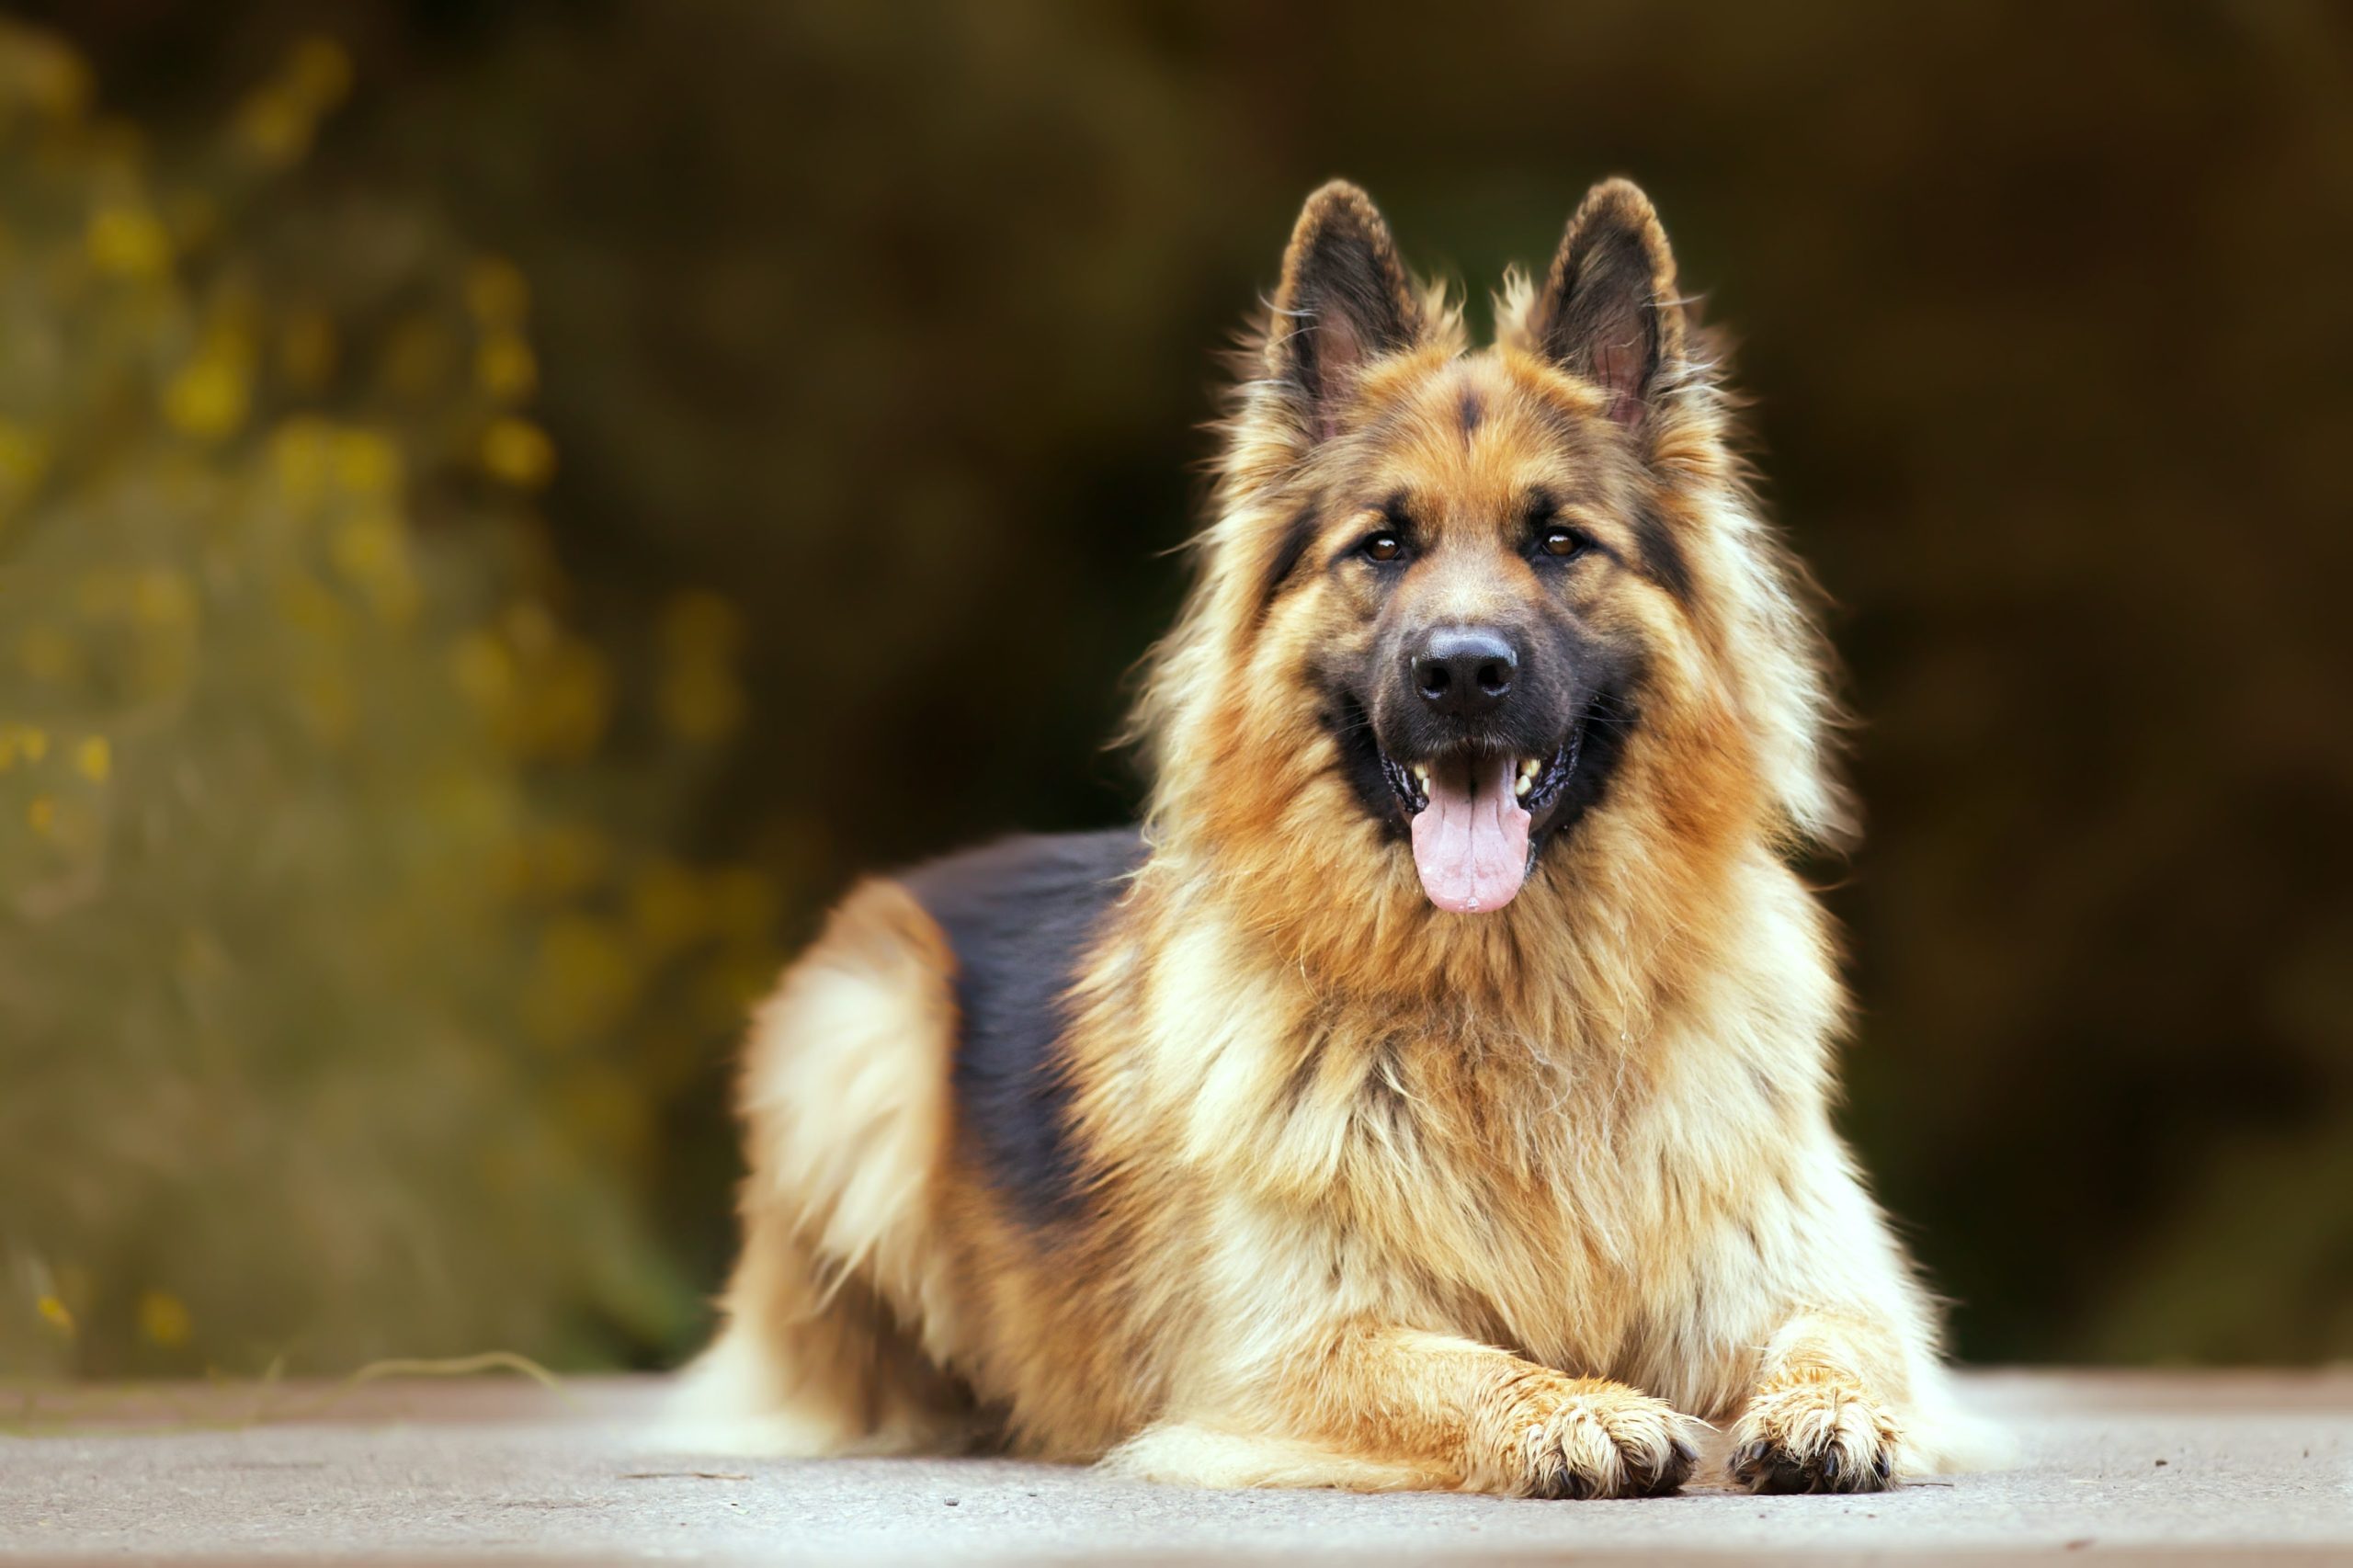  Dogs similar to German shepherds
